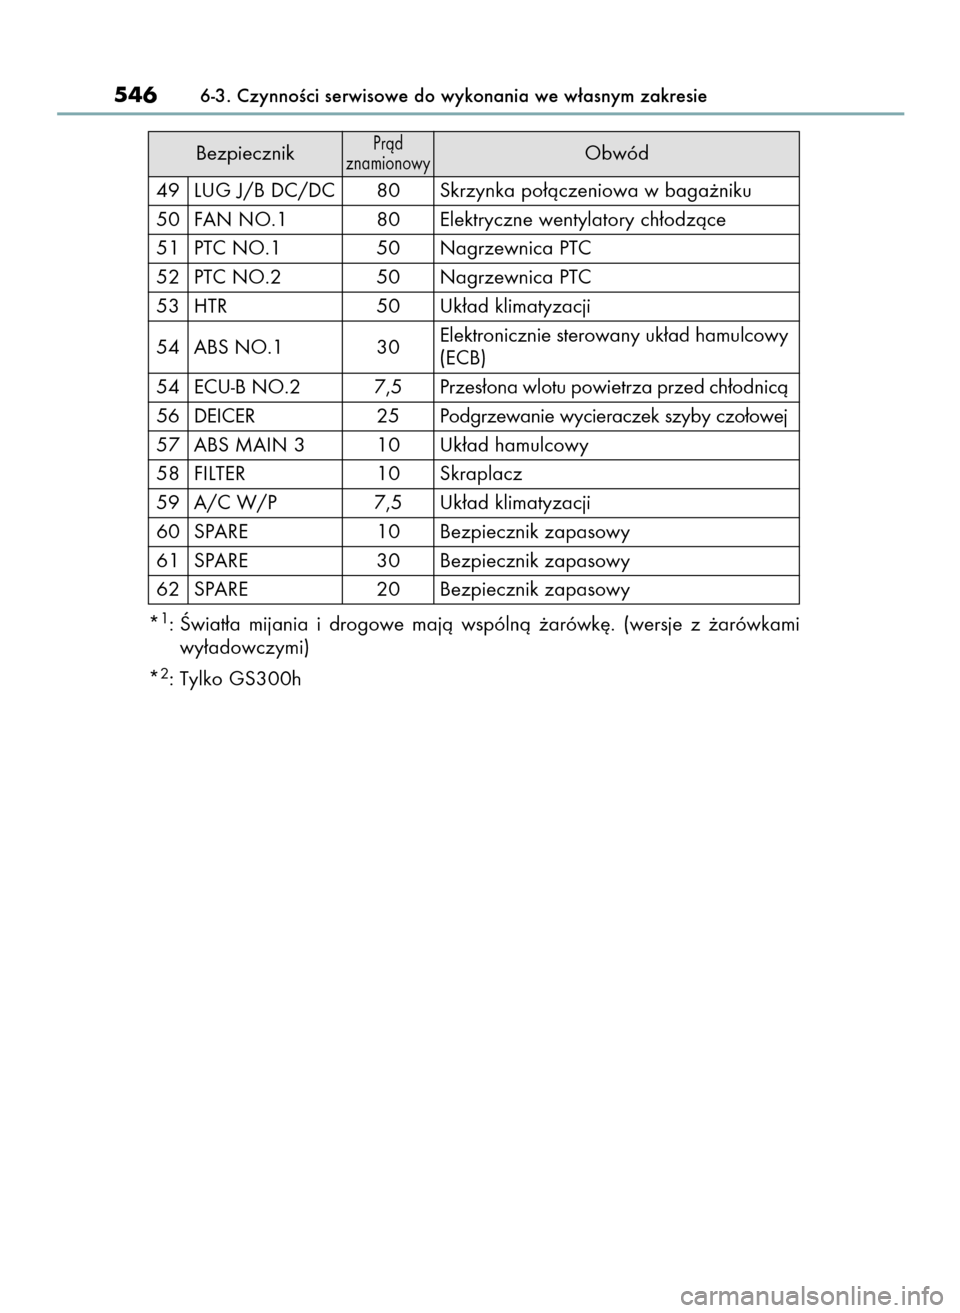 Lexus GS450h 2015  Instrukcja Obsługi (in Polish) BezpiecznikPràd 
znamionowyObwód
49 LUG J/B DC/DC 80 Skrzynka po∏àczeniowa w baga˝niku
50 FAN NO.1 80 Elektryczne wentylatory ch∏odzàce
51 PTC NO.1 50 Nagrzewnica PTC
52 PTC NO.2 50 Nagrzewni